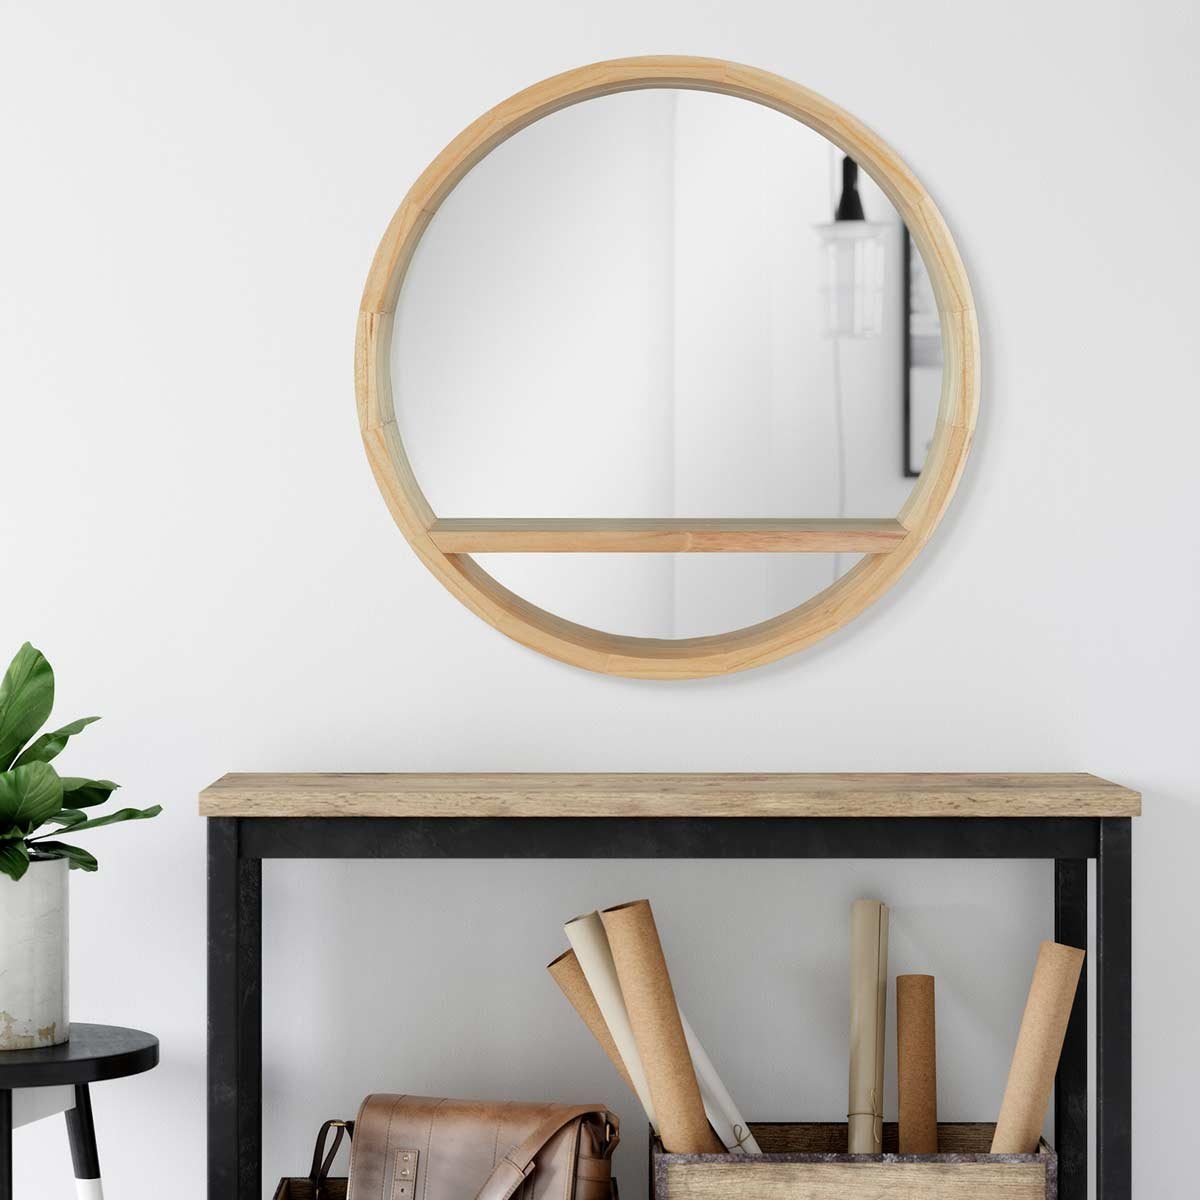 PHOTOLINI Spiegel mit Holzrahmen Naturholz Ablagefläche, Wandspiegel und praktischer